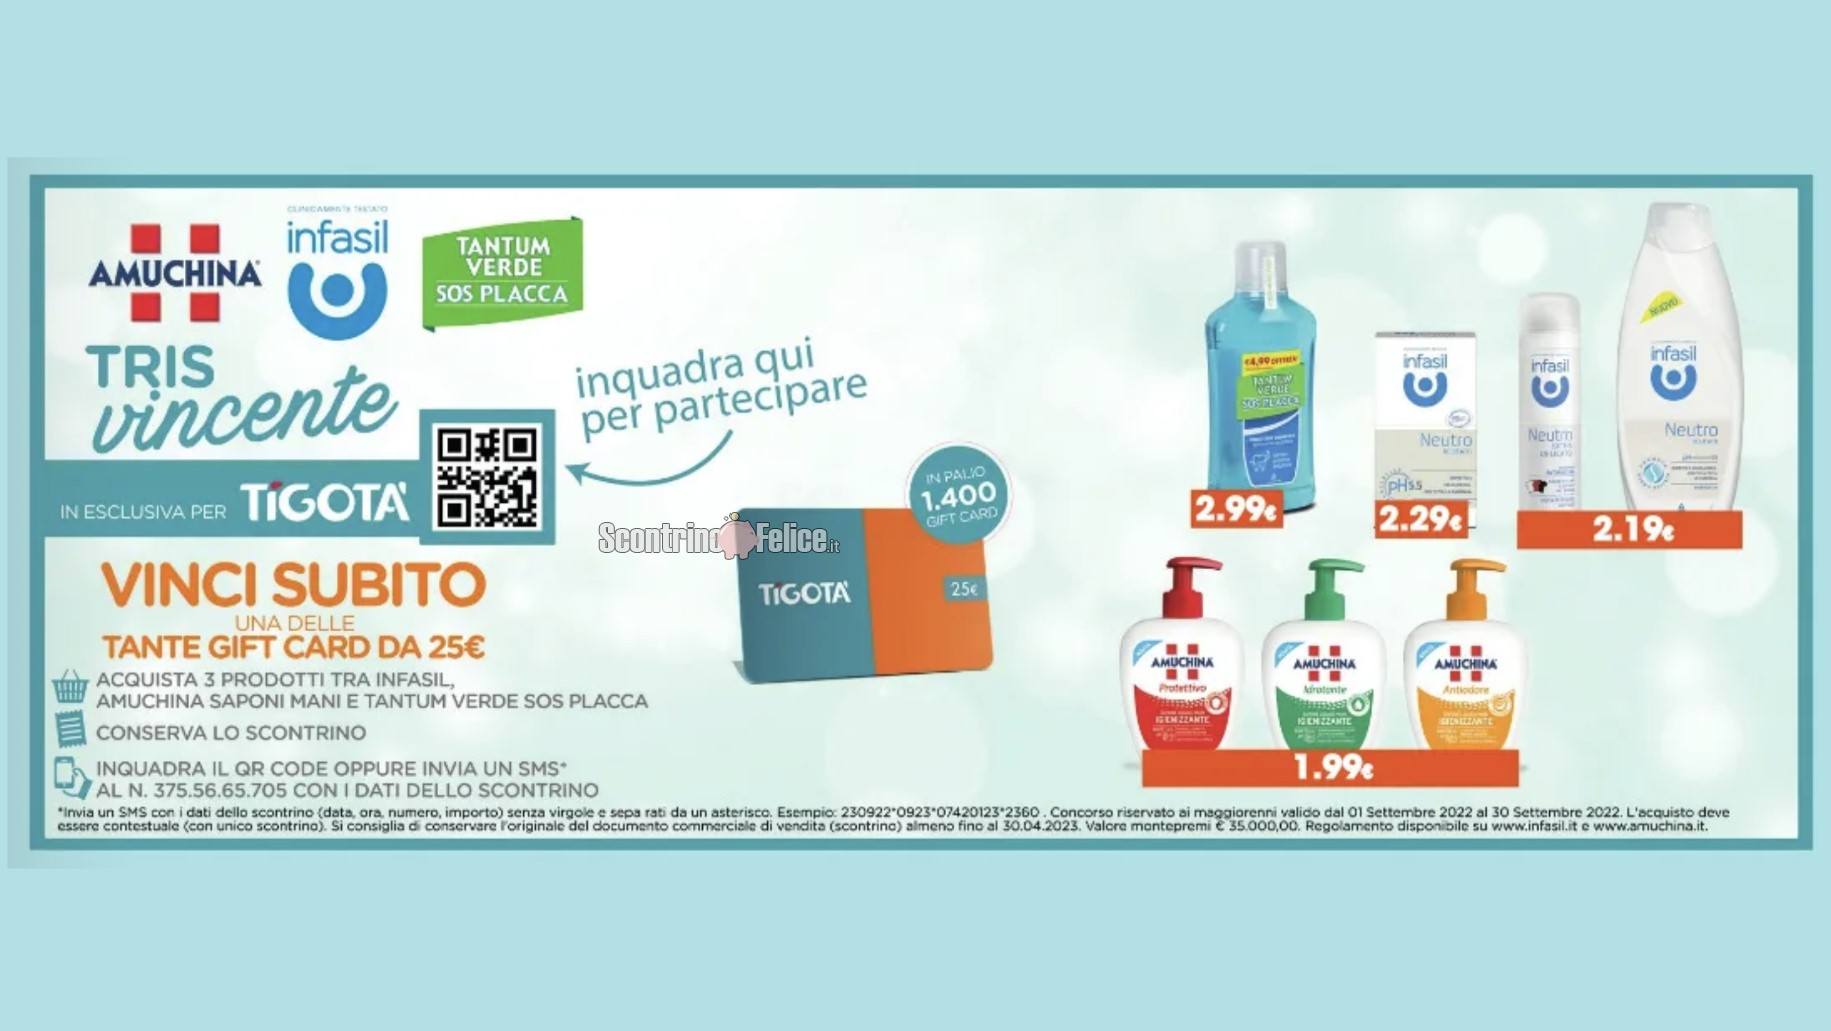 Concorso Infasil, Amuchina e Tantum Verde "Tris Vincente": vinci Gift Card Tigotà da 25 euro